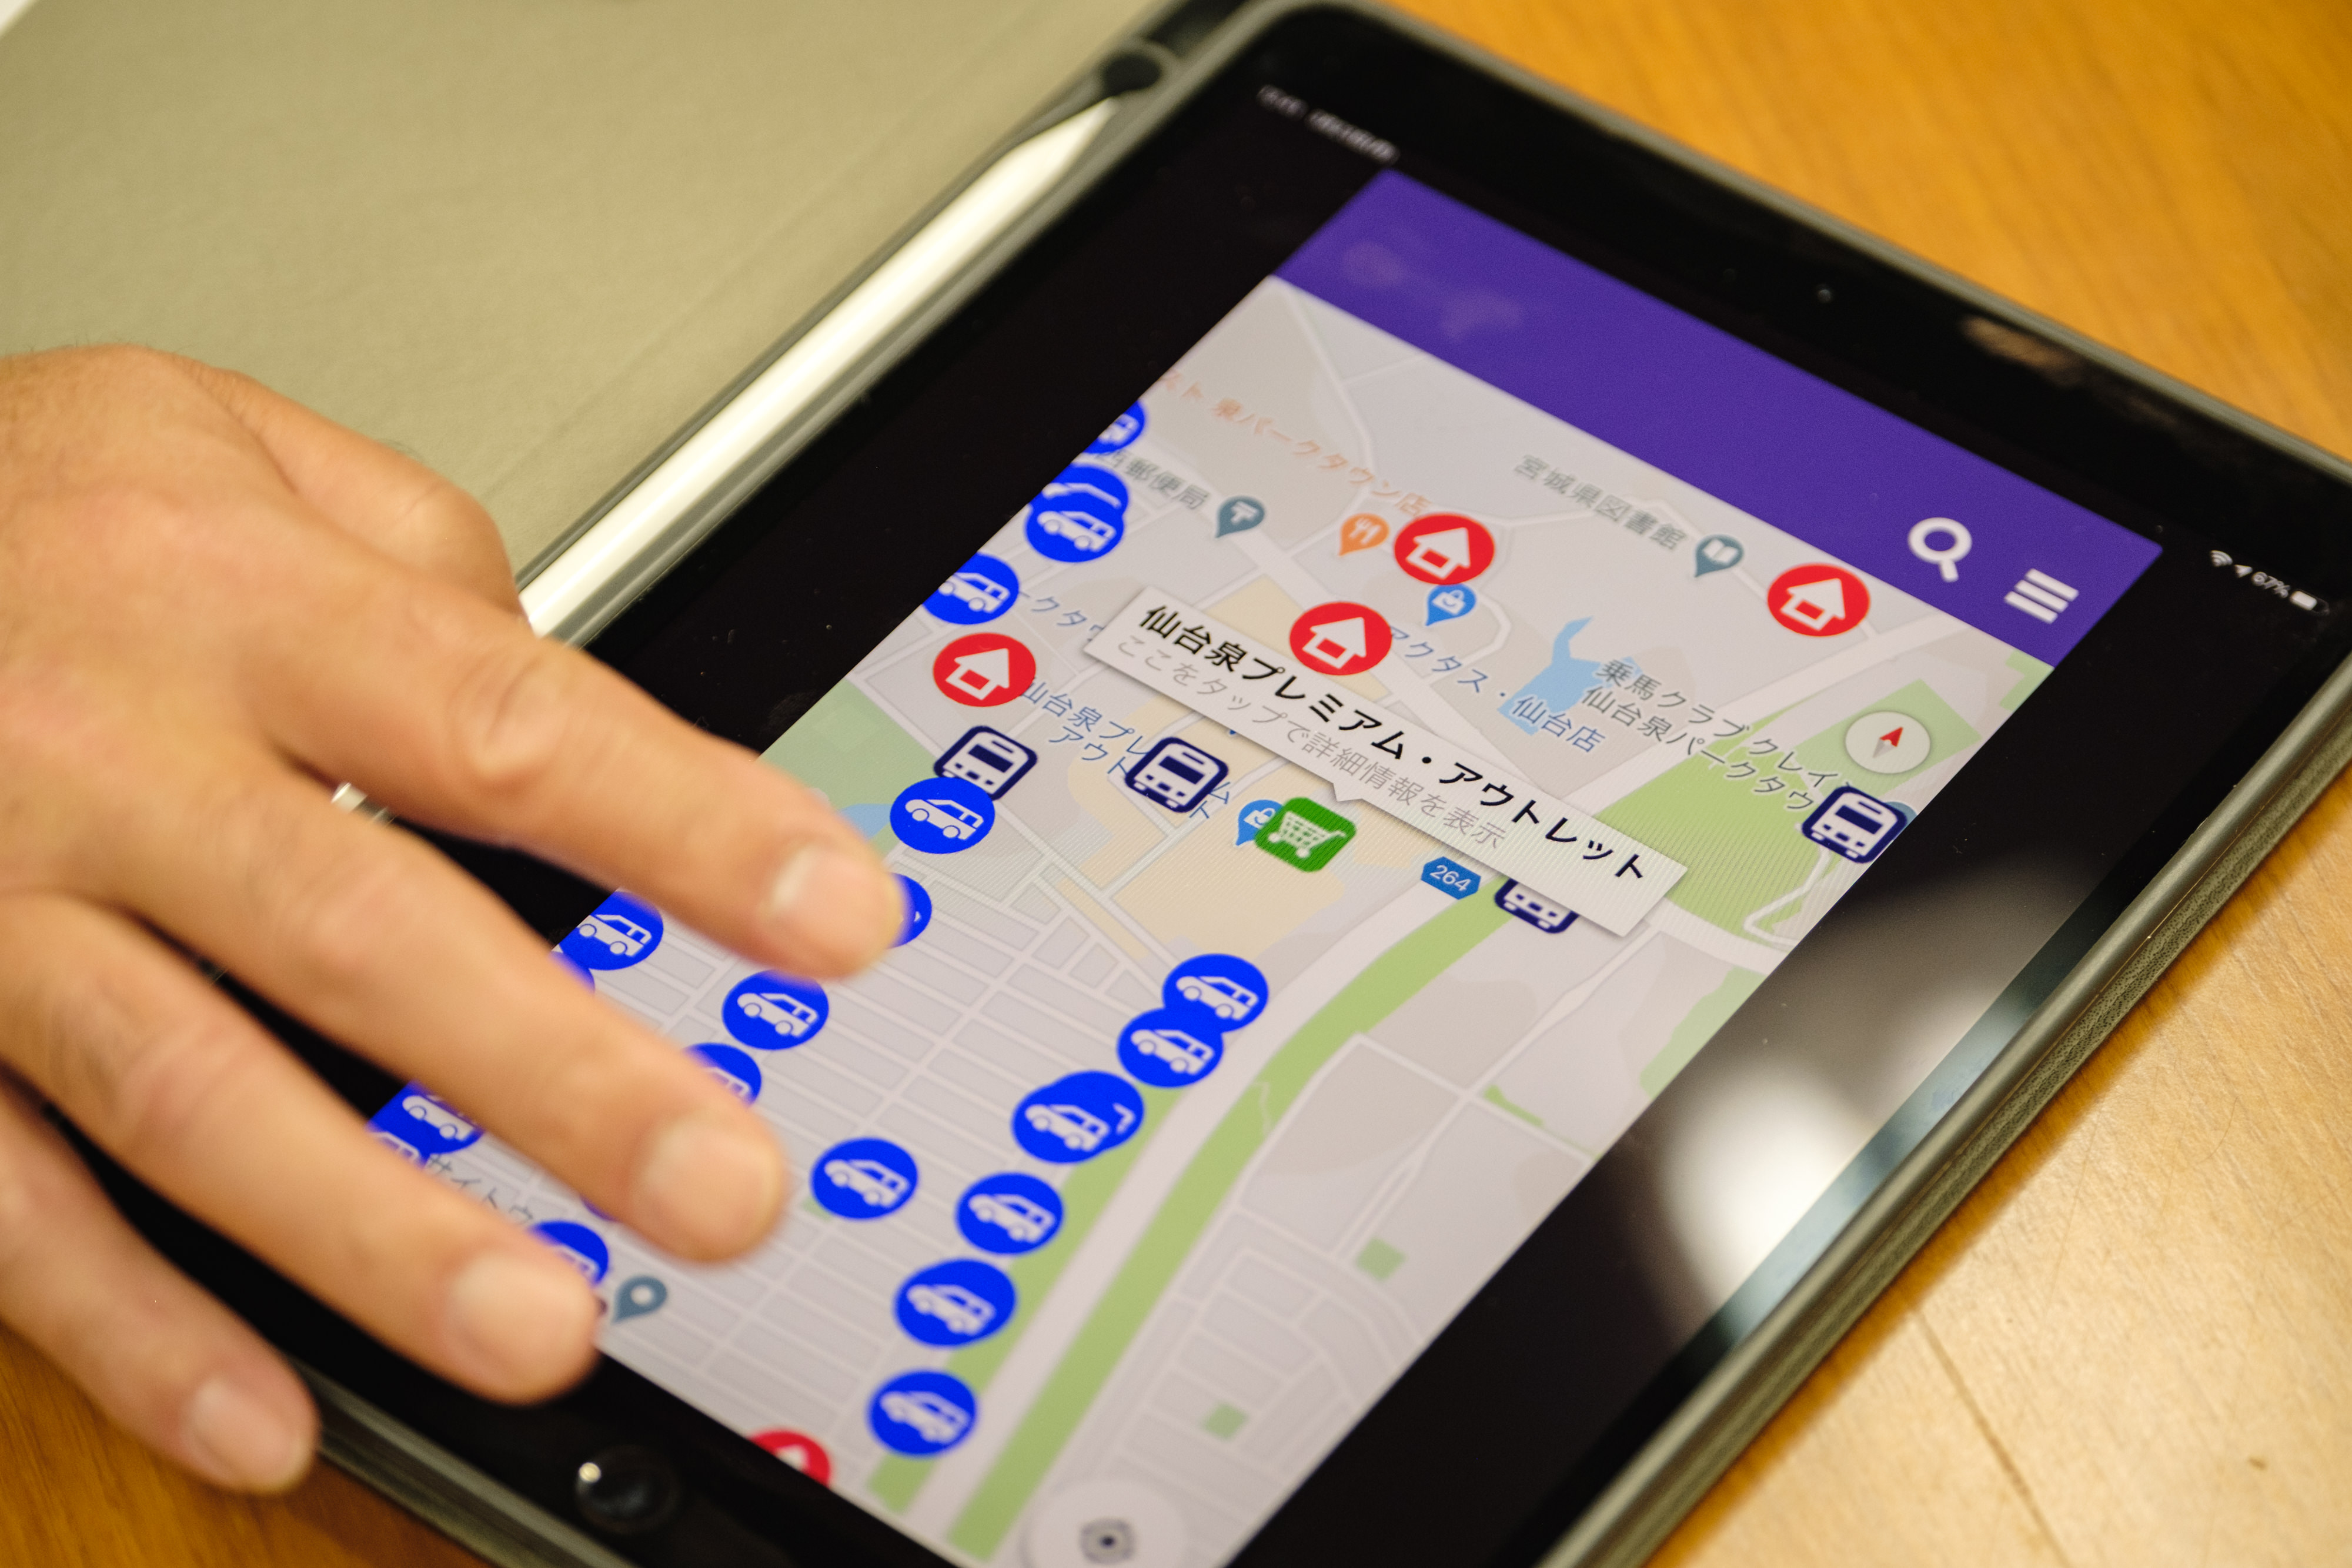 アプリ上のマップで周辺の店舗やバス停を表示している画面